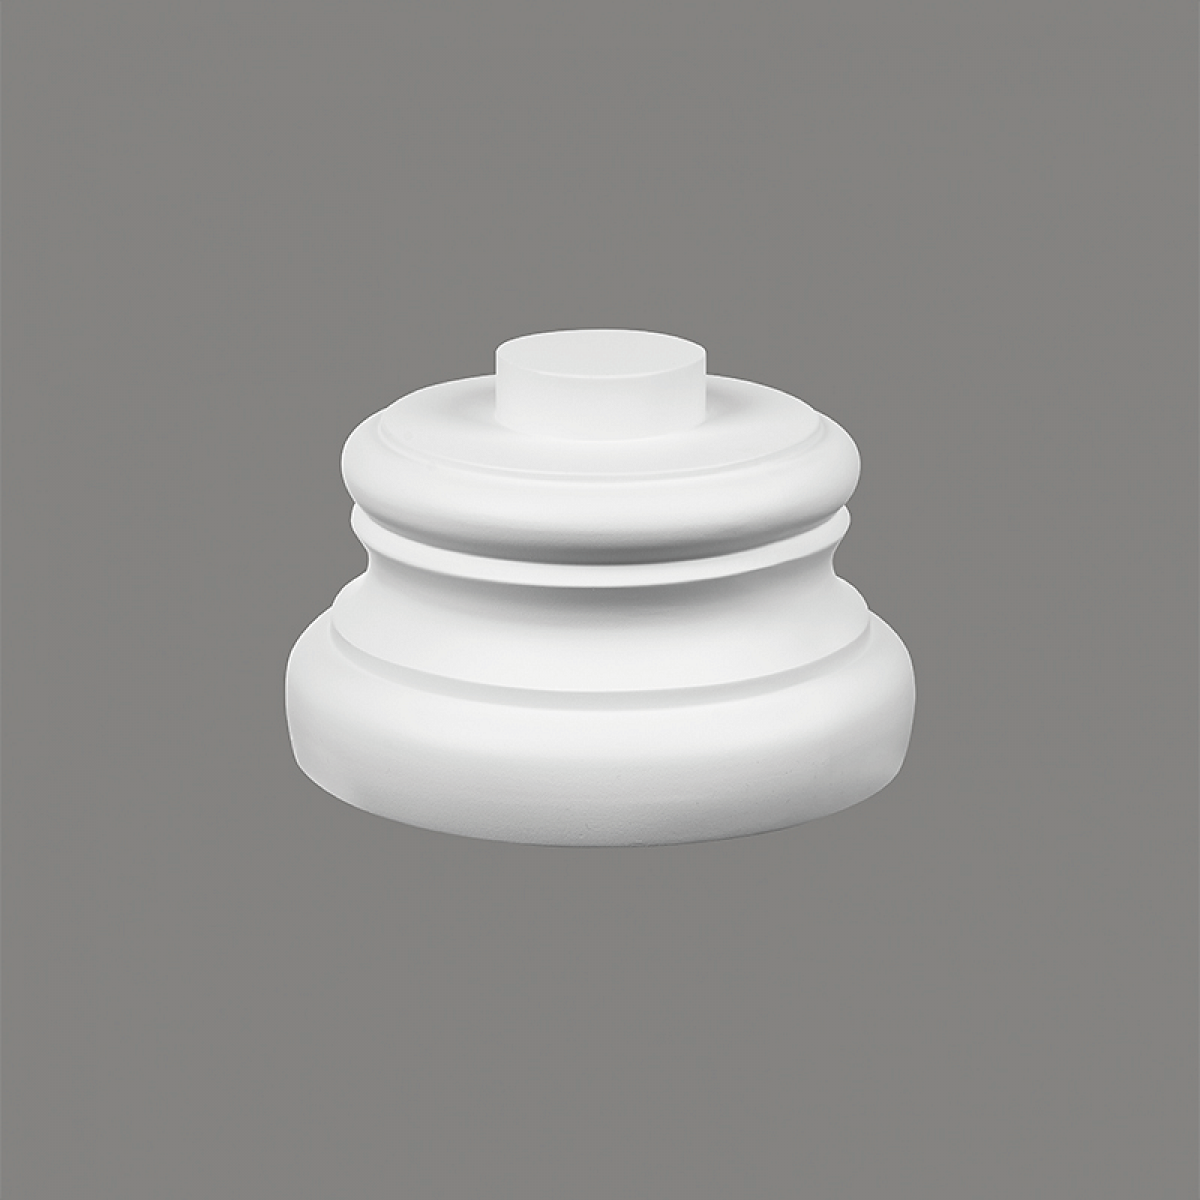 Coloane si semicoloane Mardom Decor MRD-C5002-4W, material: ProFoam